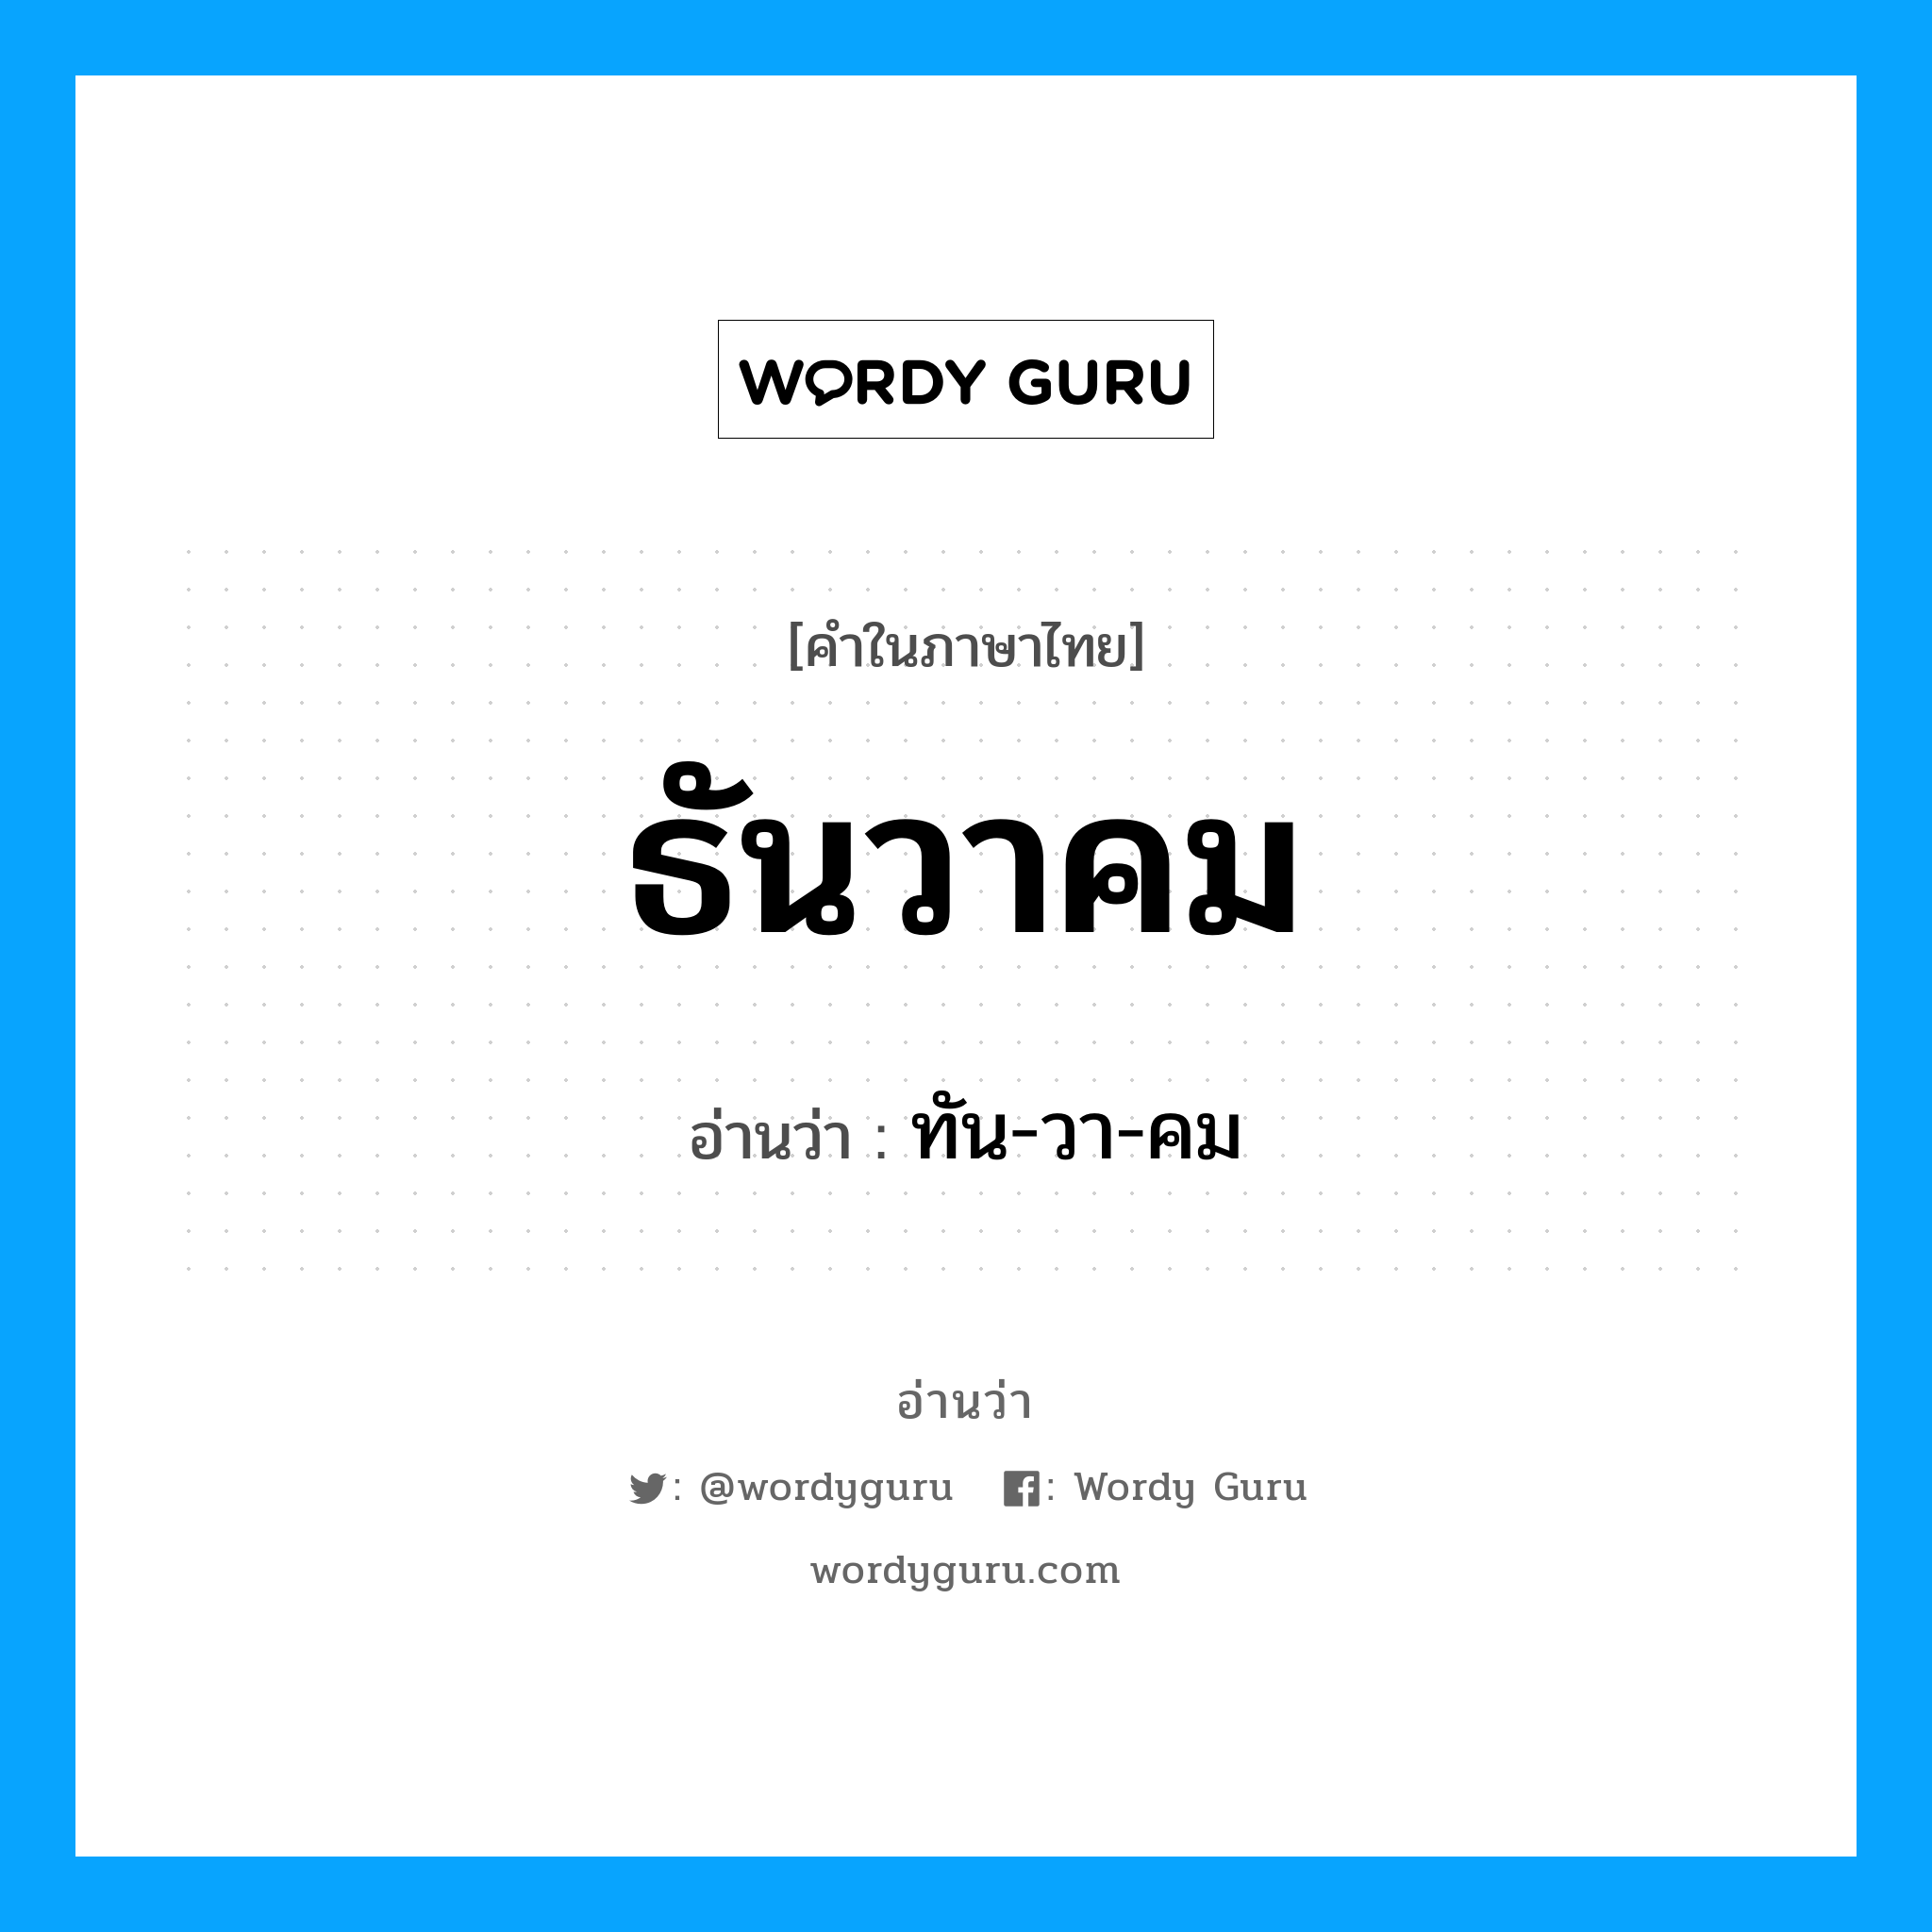 ทัน-วา-คม เป็นคำอ่านของคำไหน?, คำในภาษาไทย ทัน-วา-คม อ่านว่า ธันวาคม หมวด เดือน หมวด เดือน